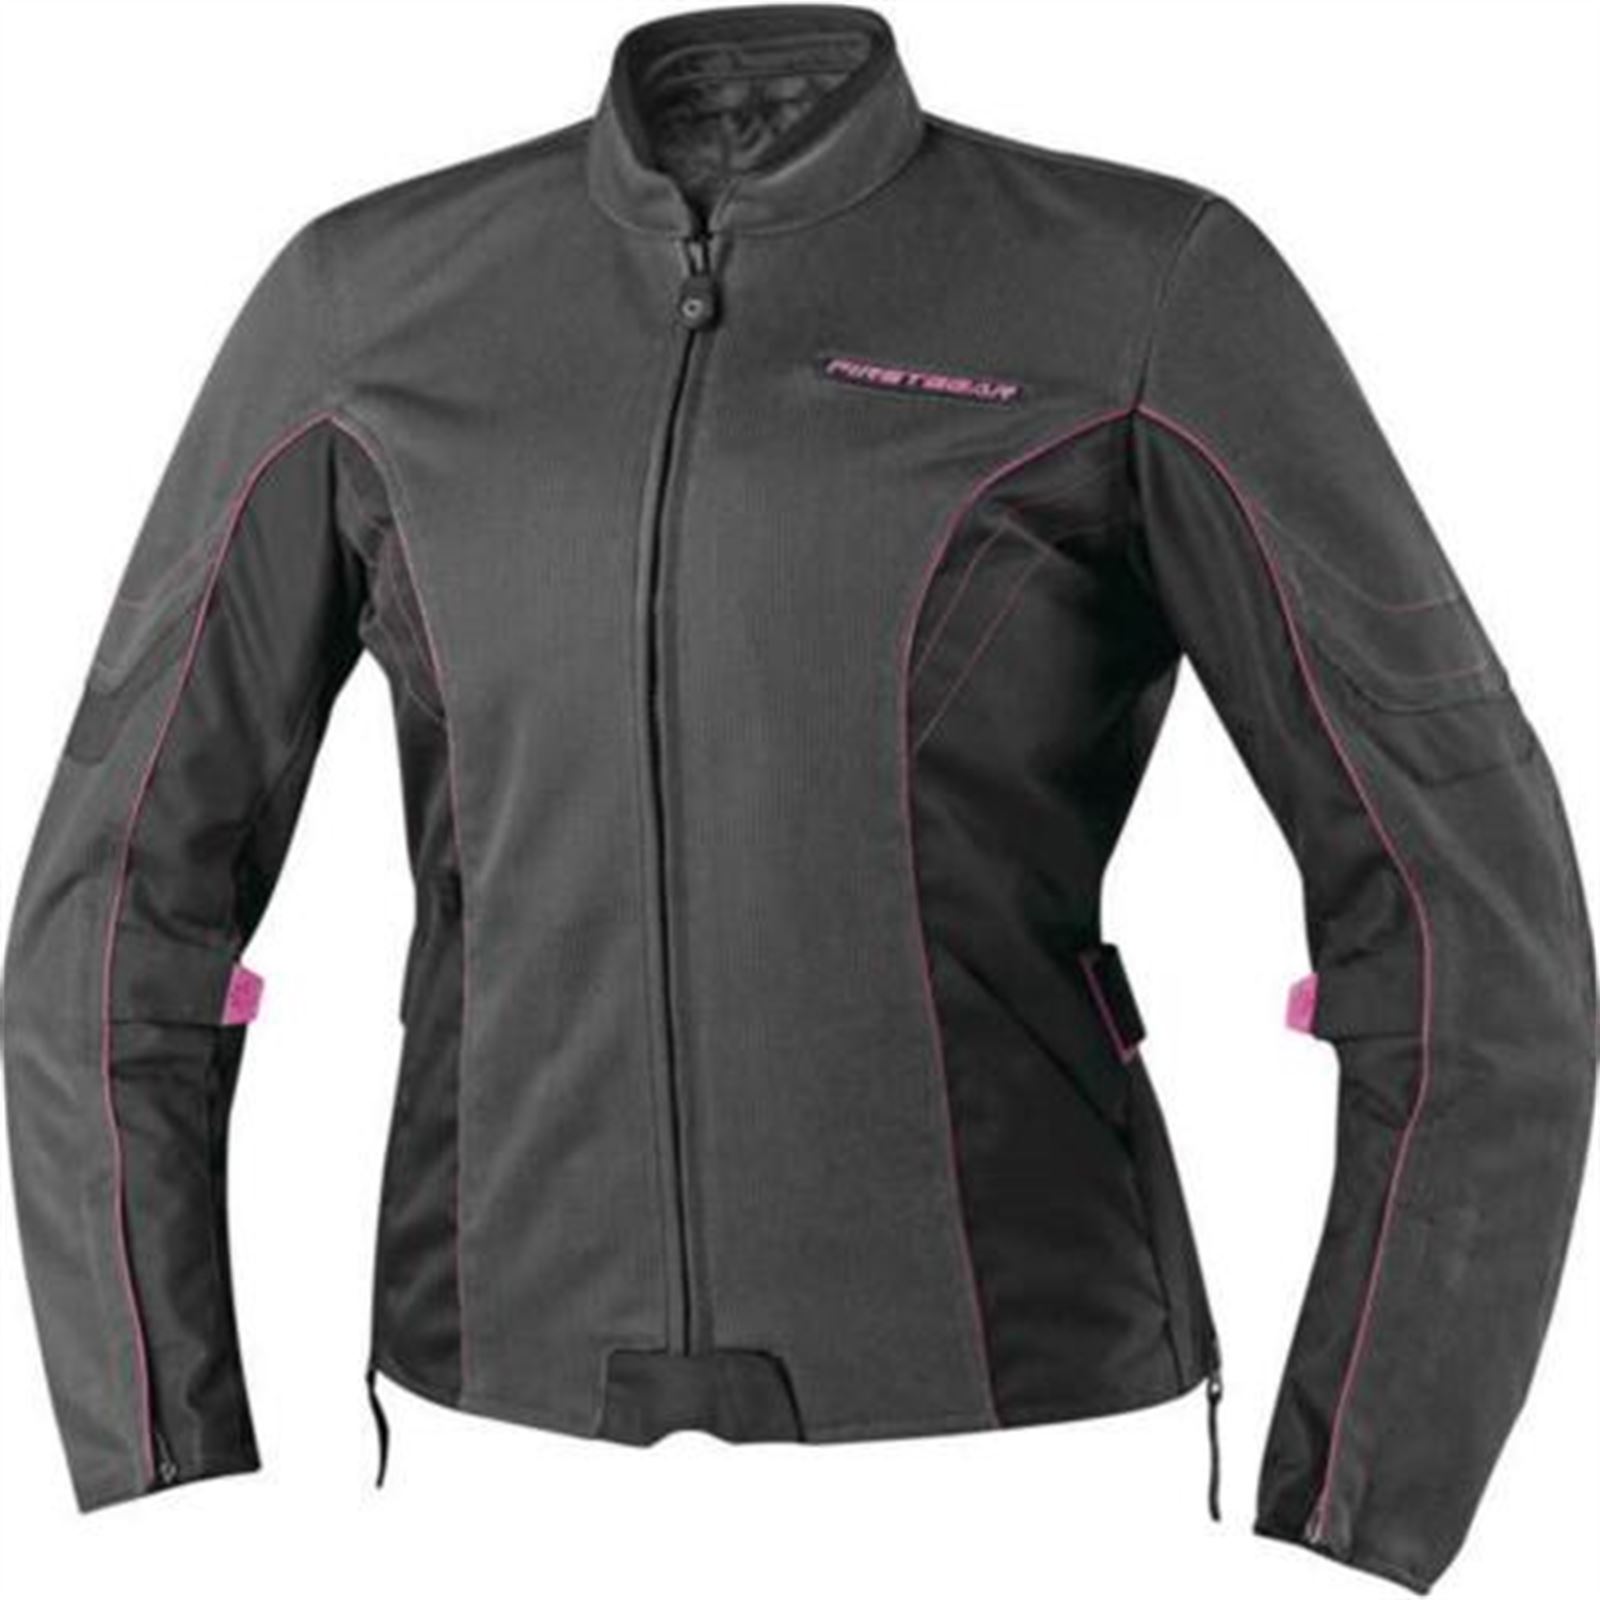 Firstgear Women's Contour Jacket (Small) (Black/Pink) 